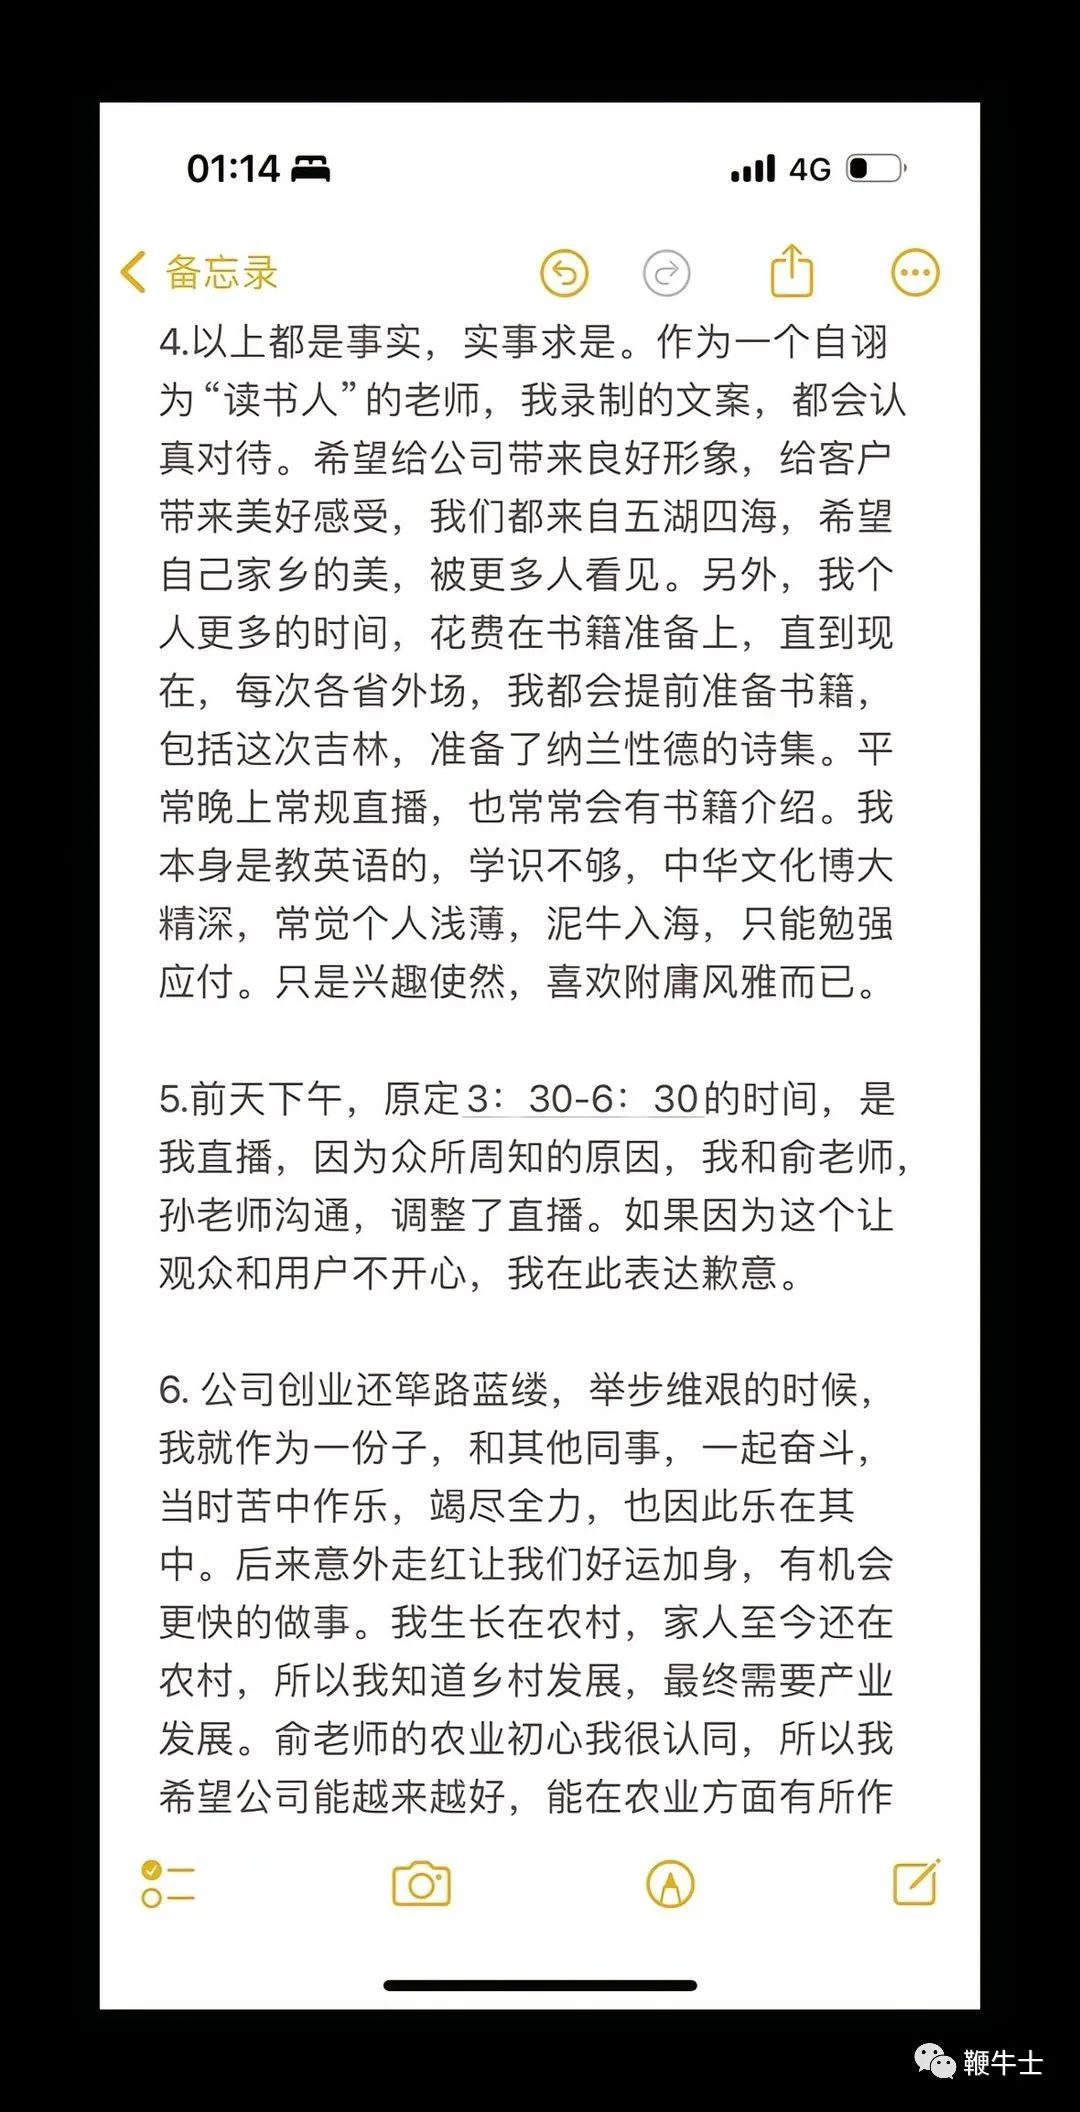 董宇辉“小作文”事件引发社会关注，东方甄选直播间热度持续升温 - 知乎